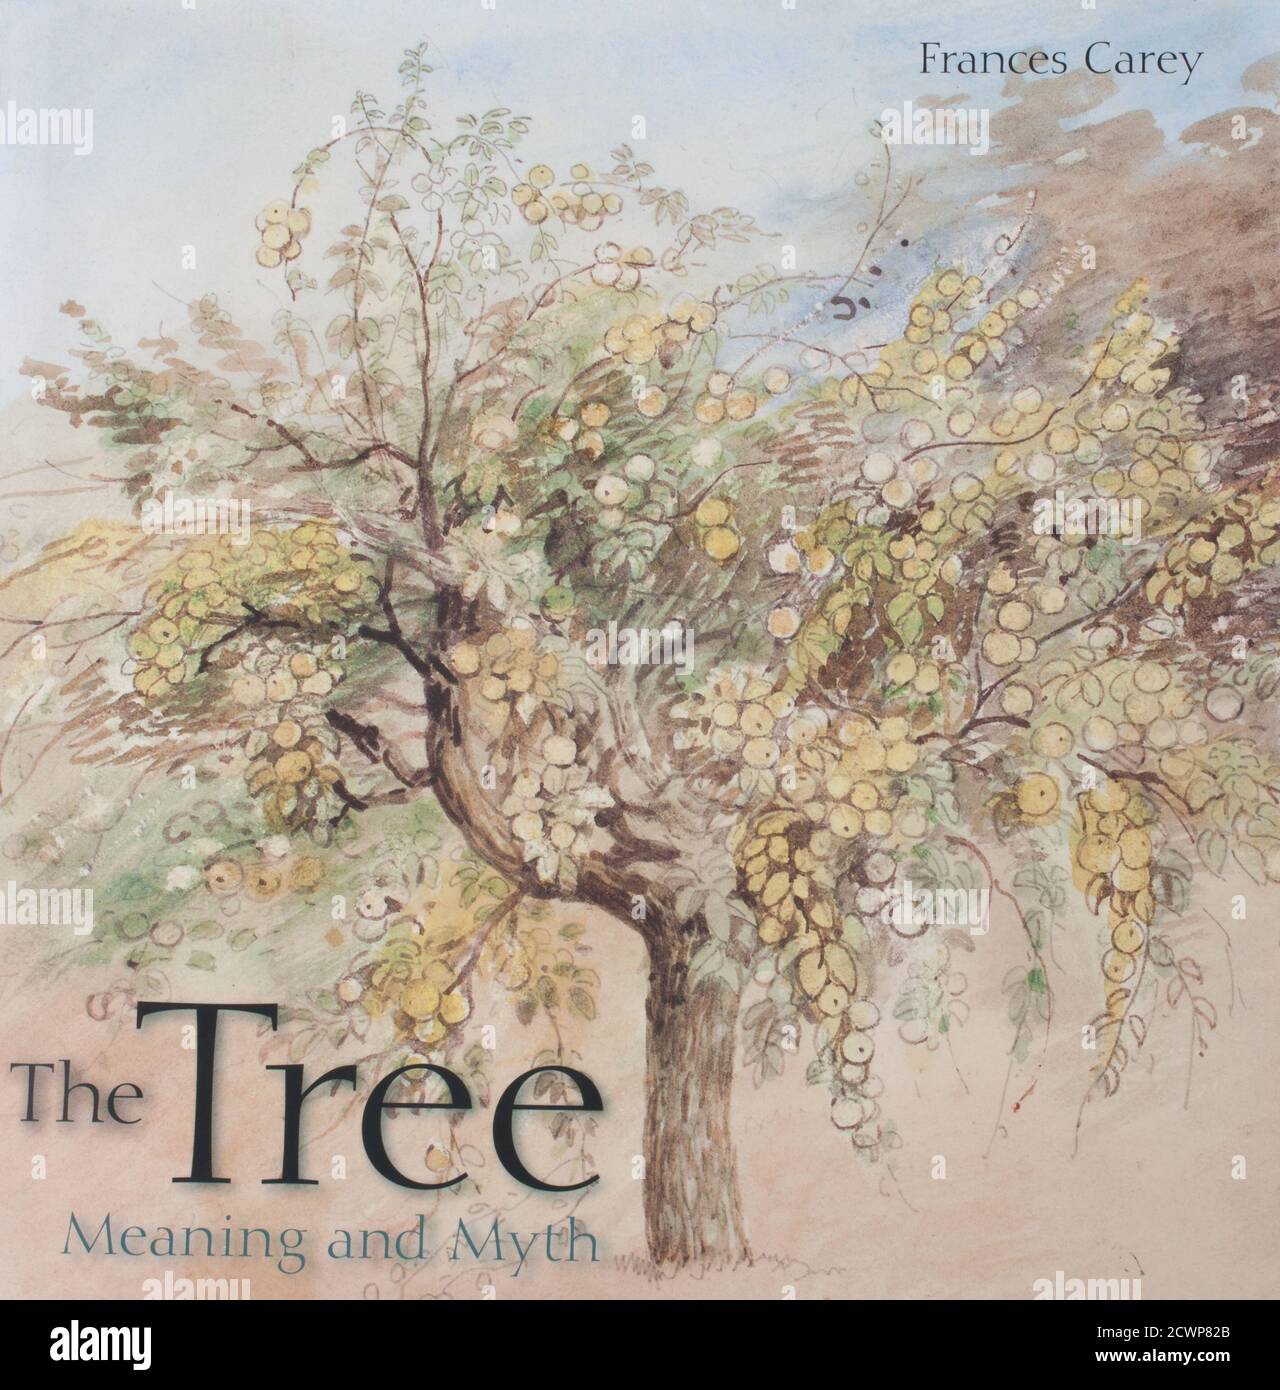 Das Buch. Baum Bedeutung und Mythos von Frances Carey Stockfoto